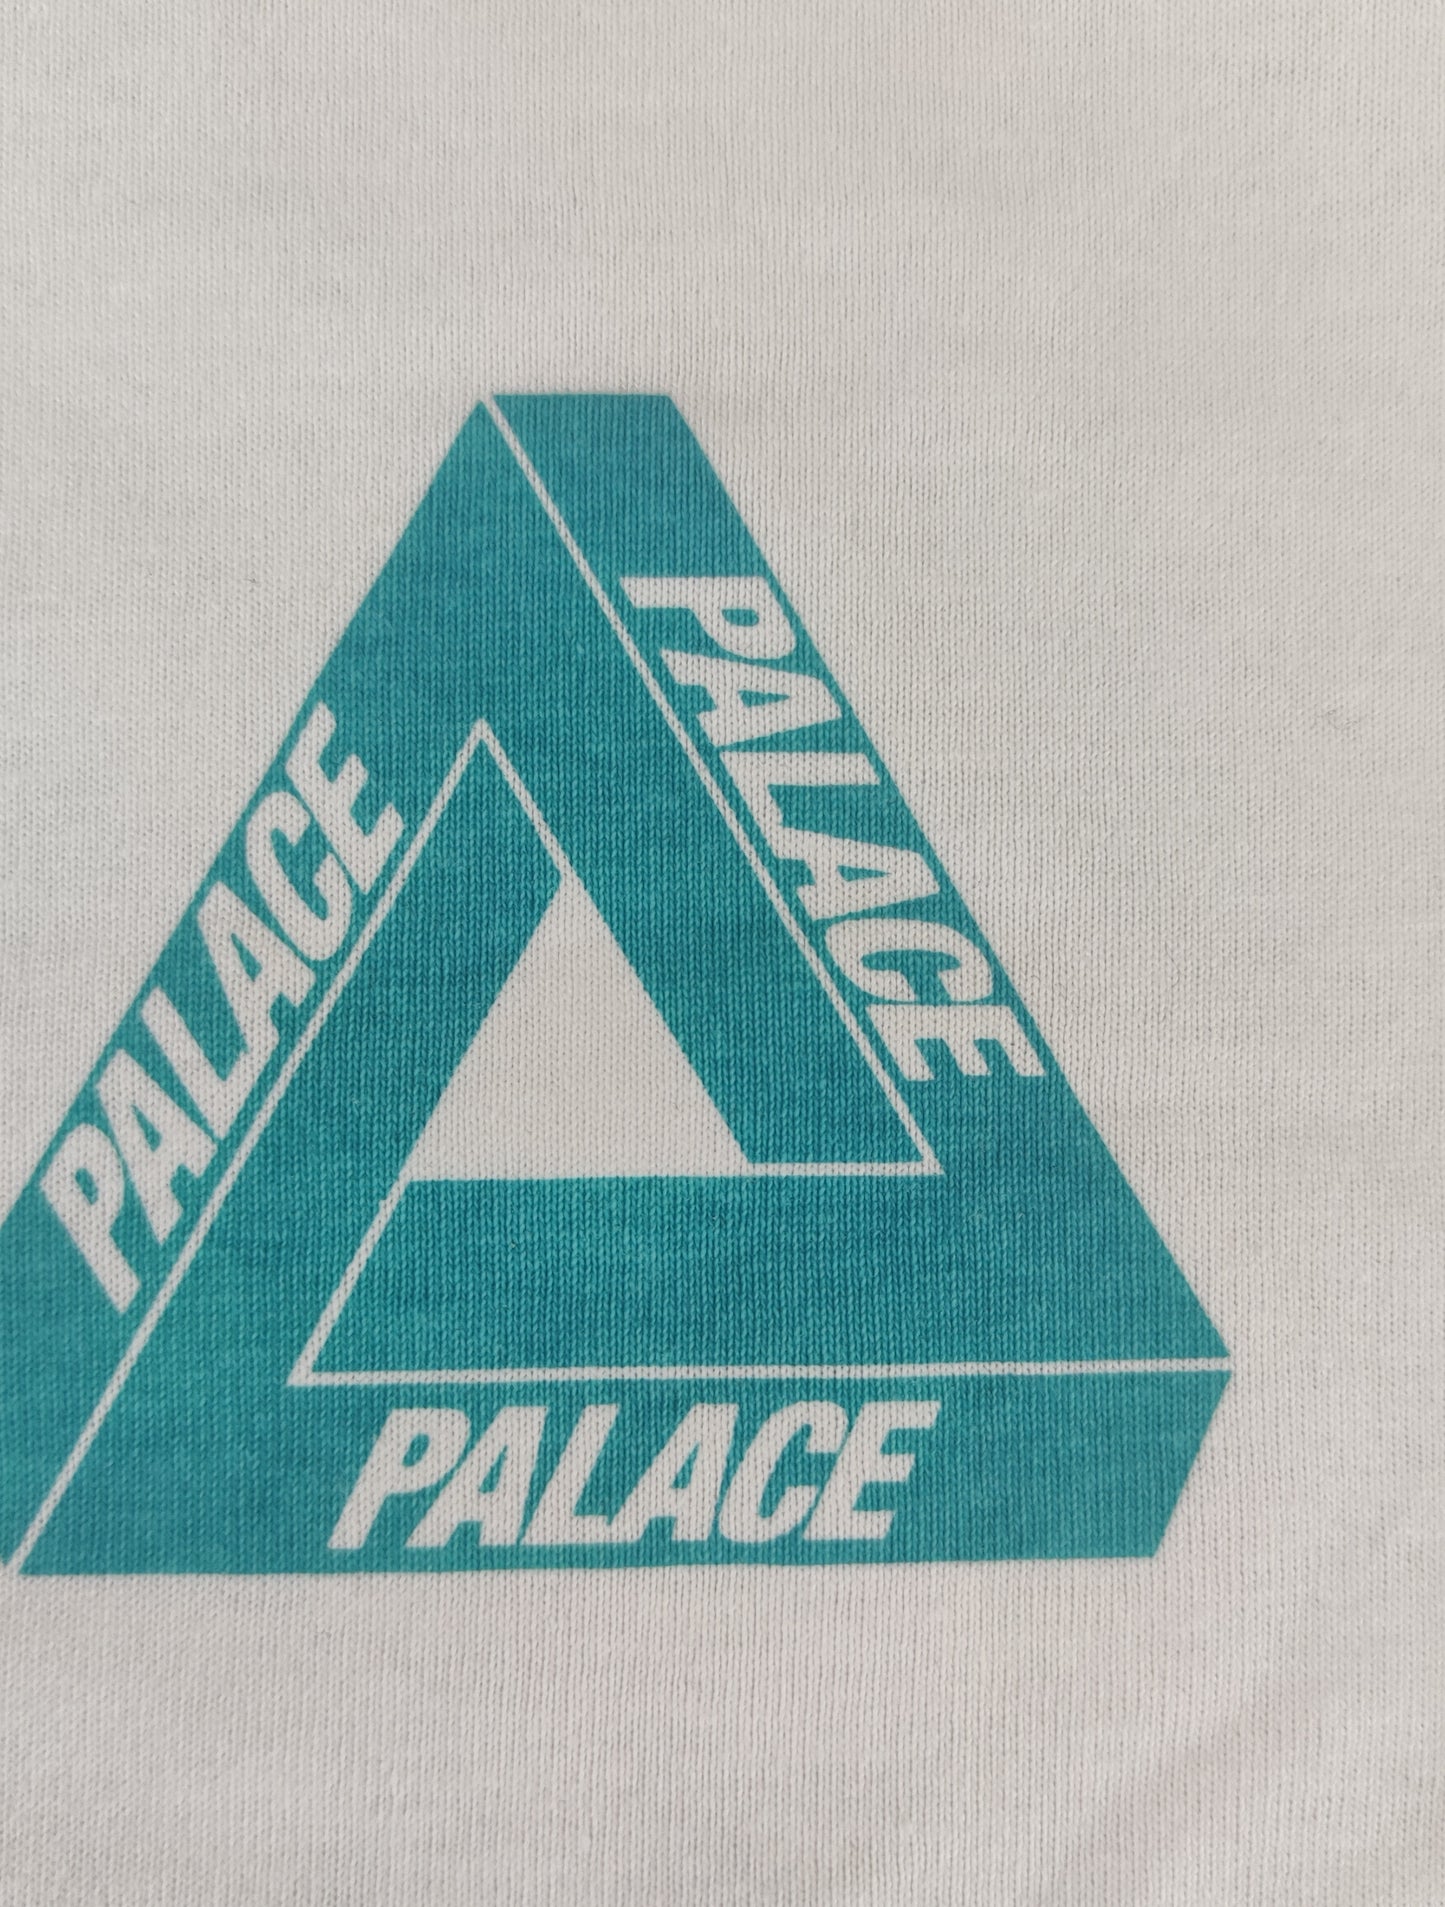 탑팔라스 / 팔라스 반팔티 ,  Palace Reacto Tri-Ferg T-Shirt White